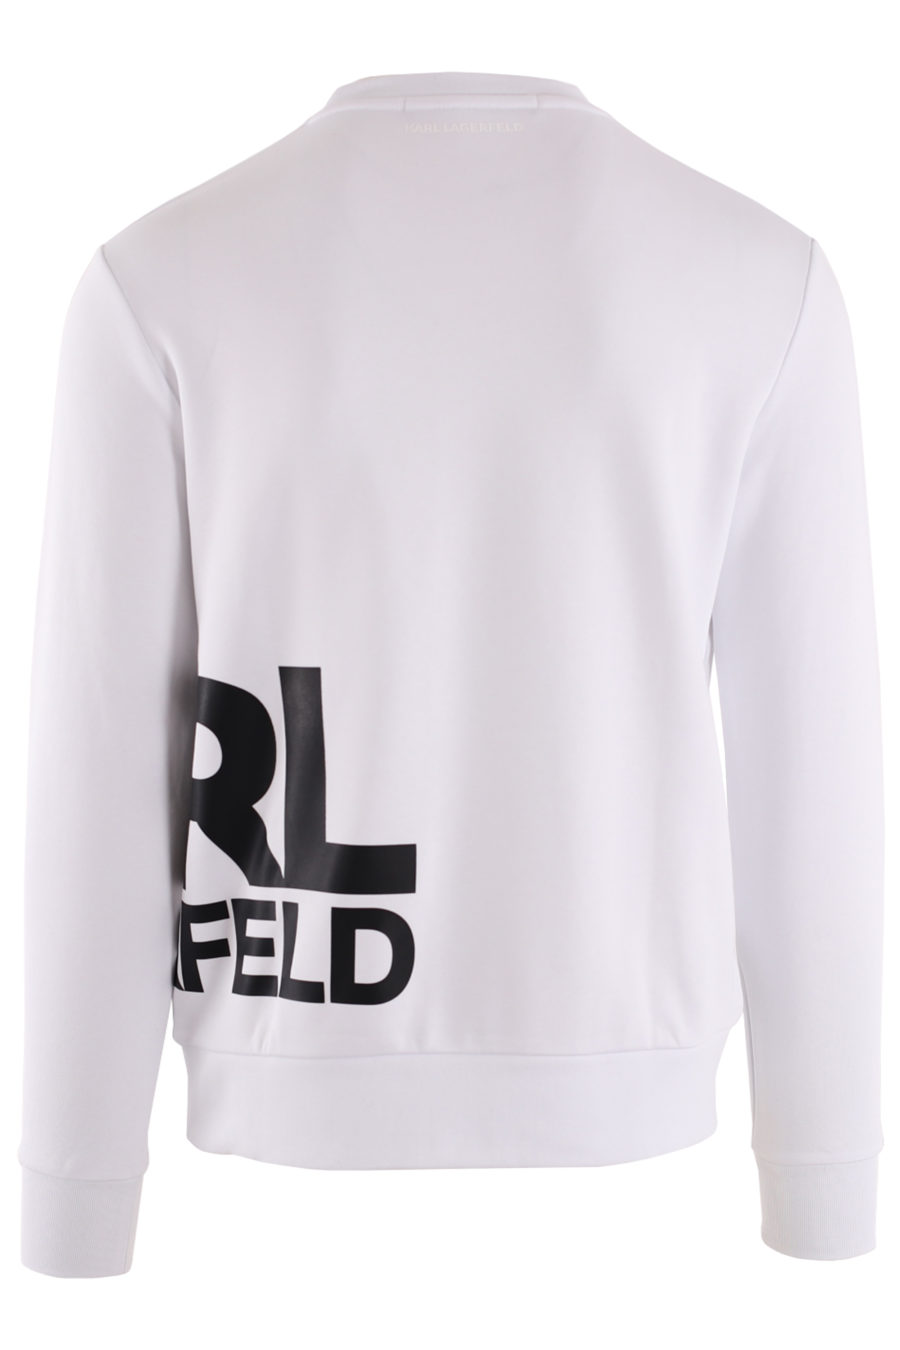 White sweatshirt with large black side logo - IMG 8716